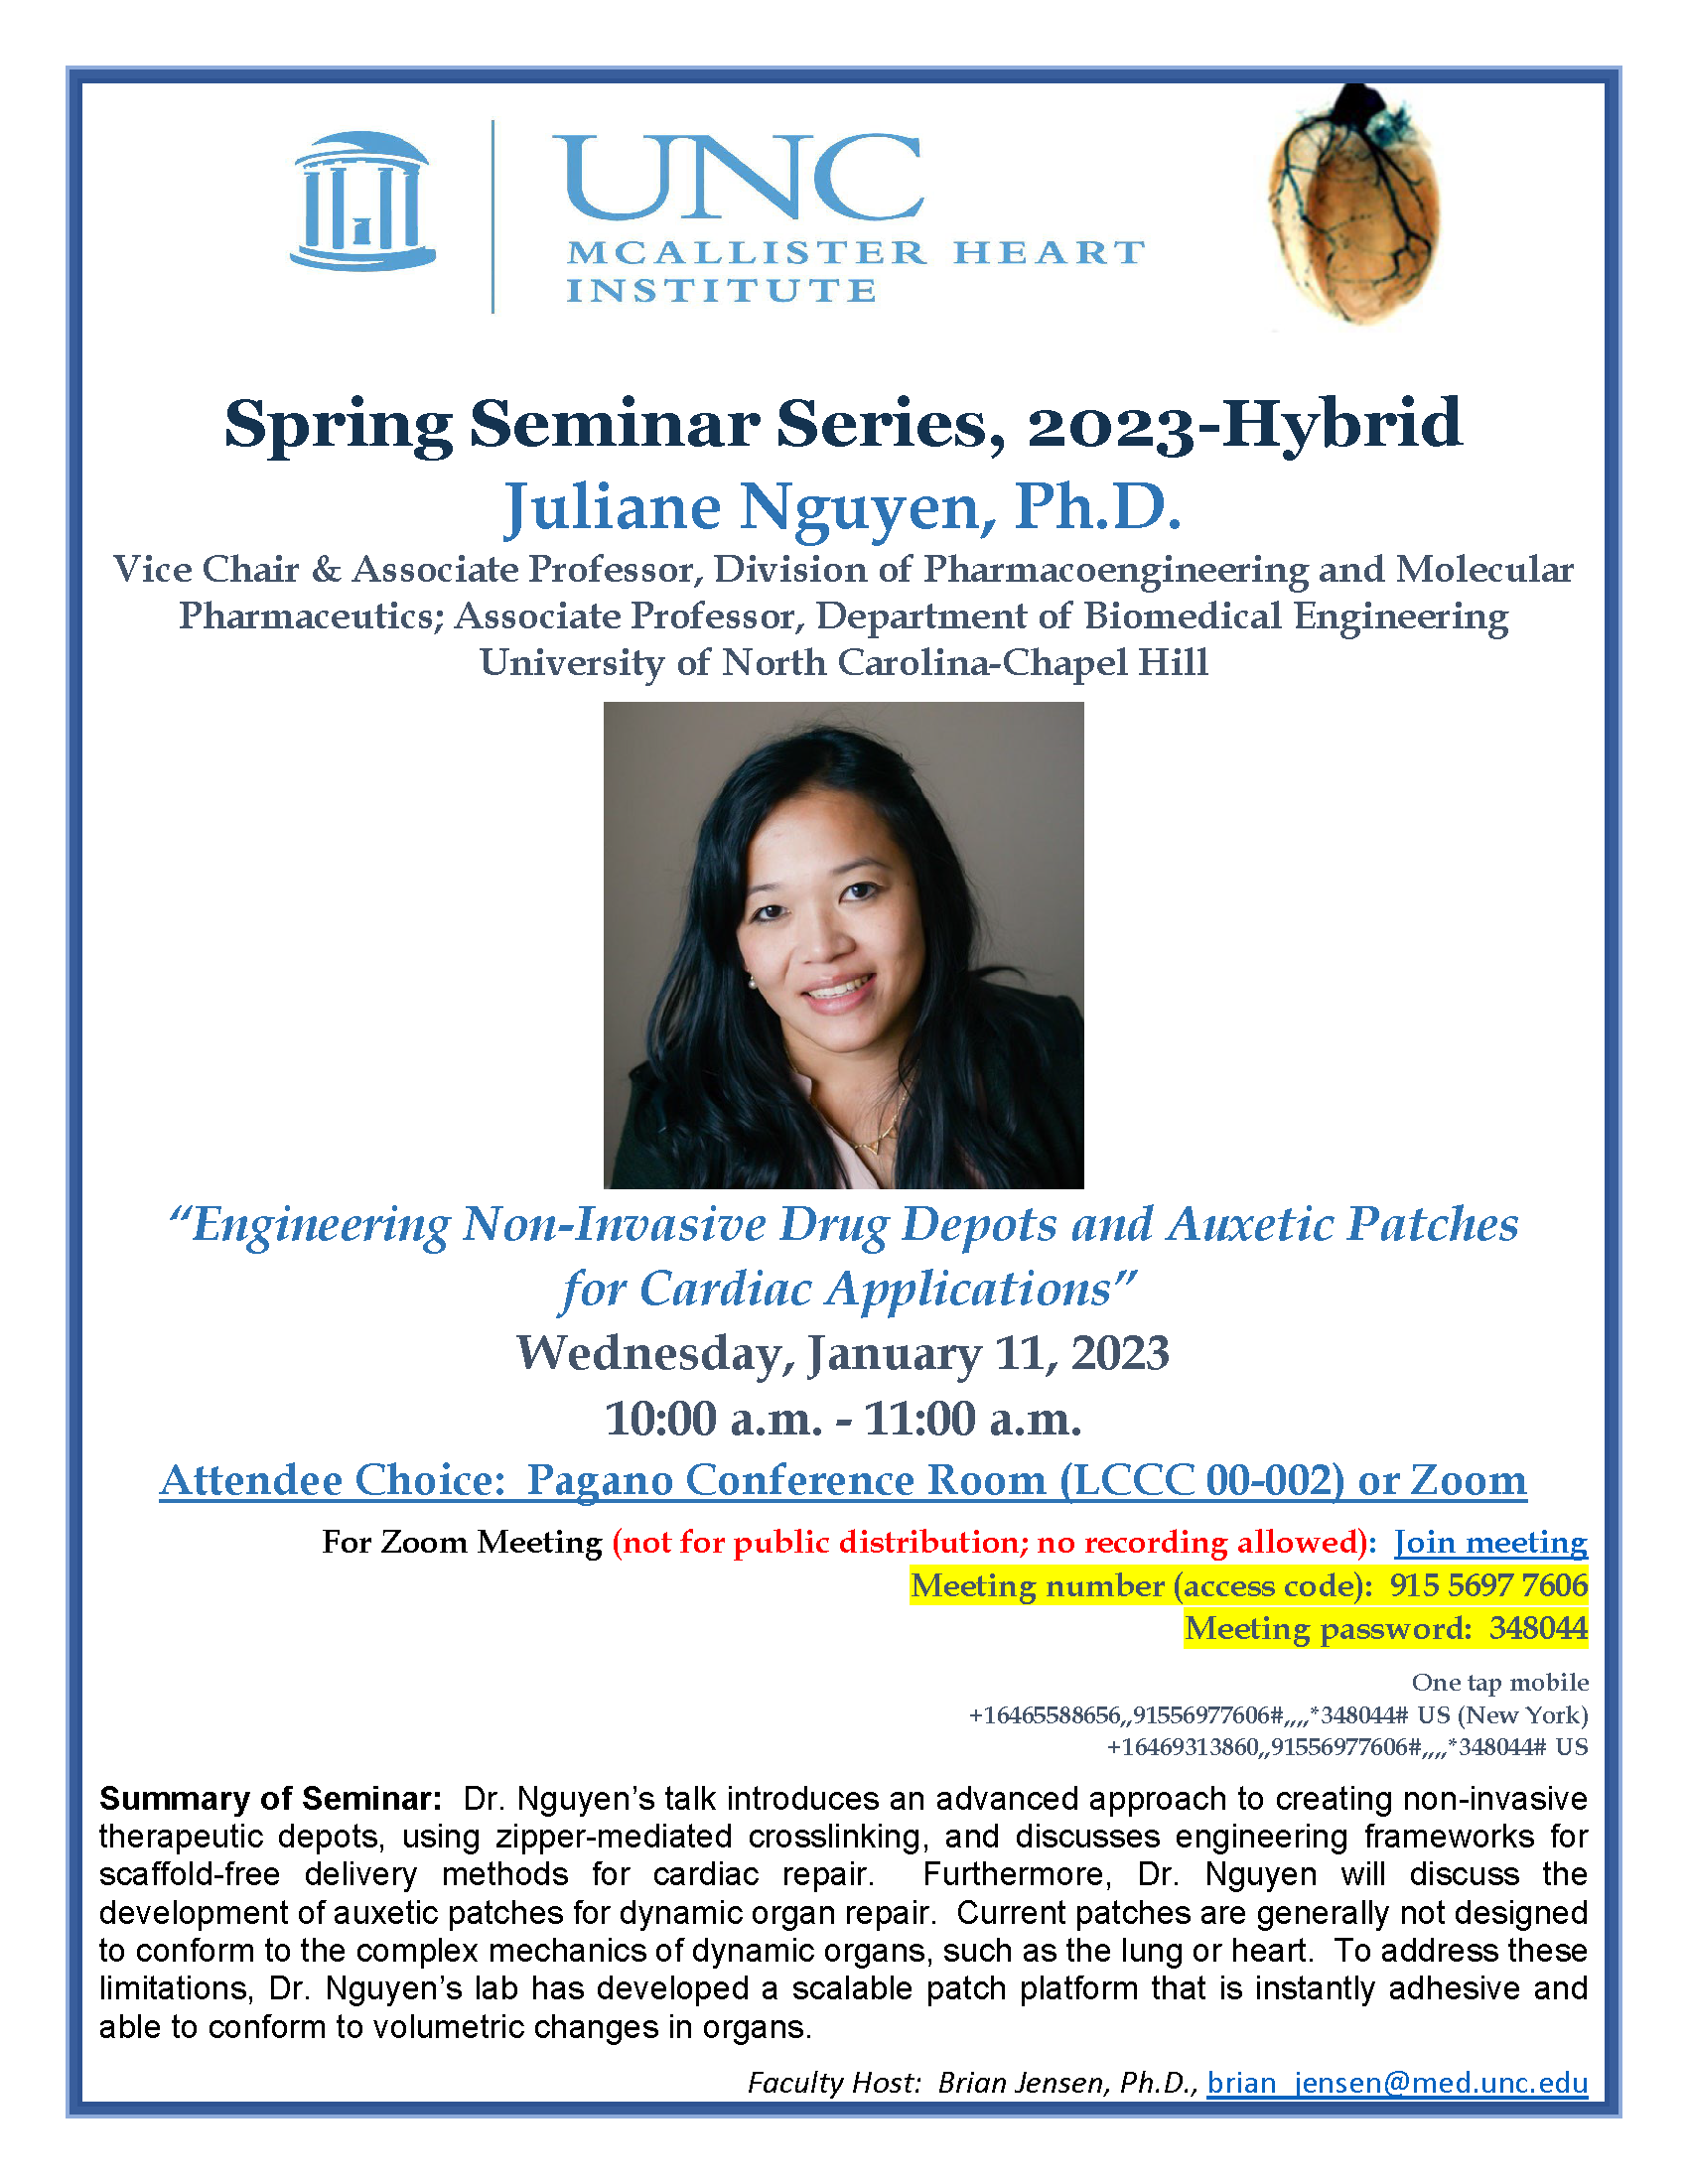 Juliane Nguyen, Ph.D.